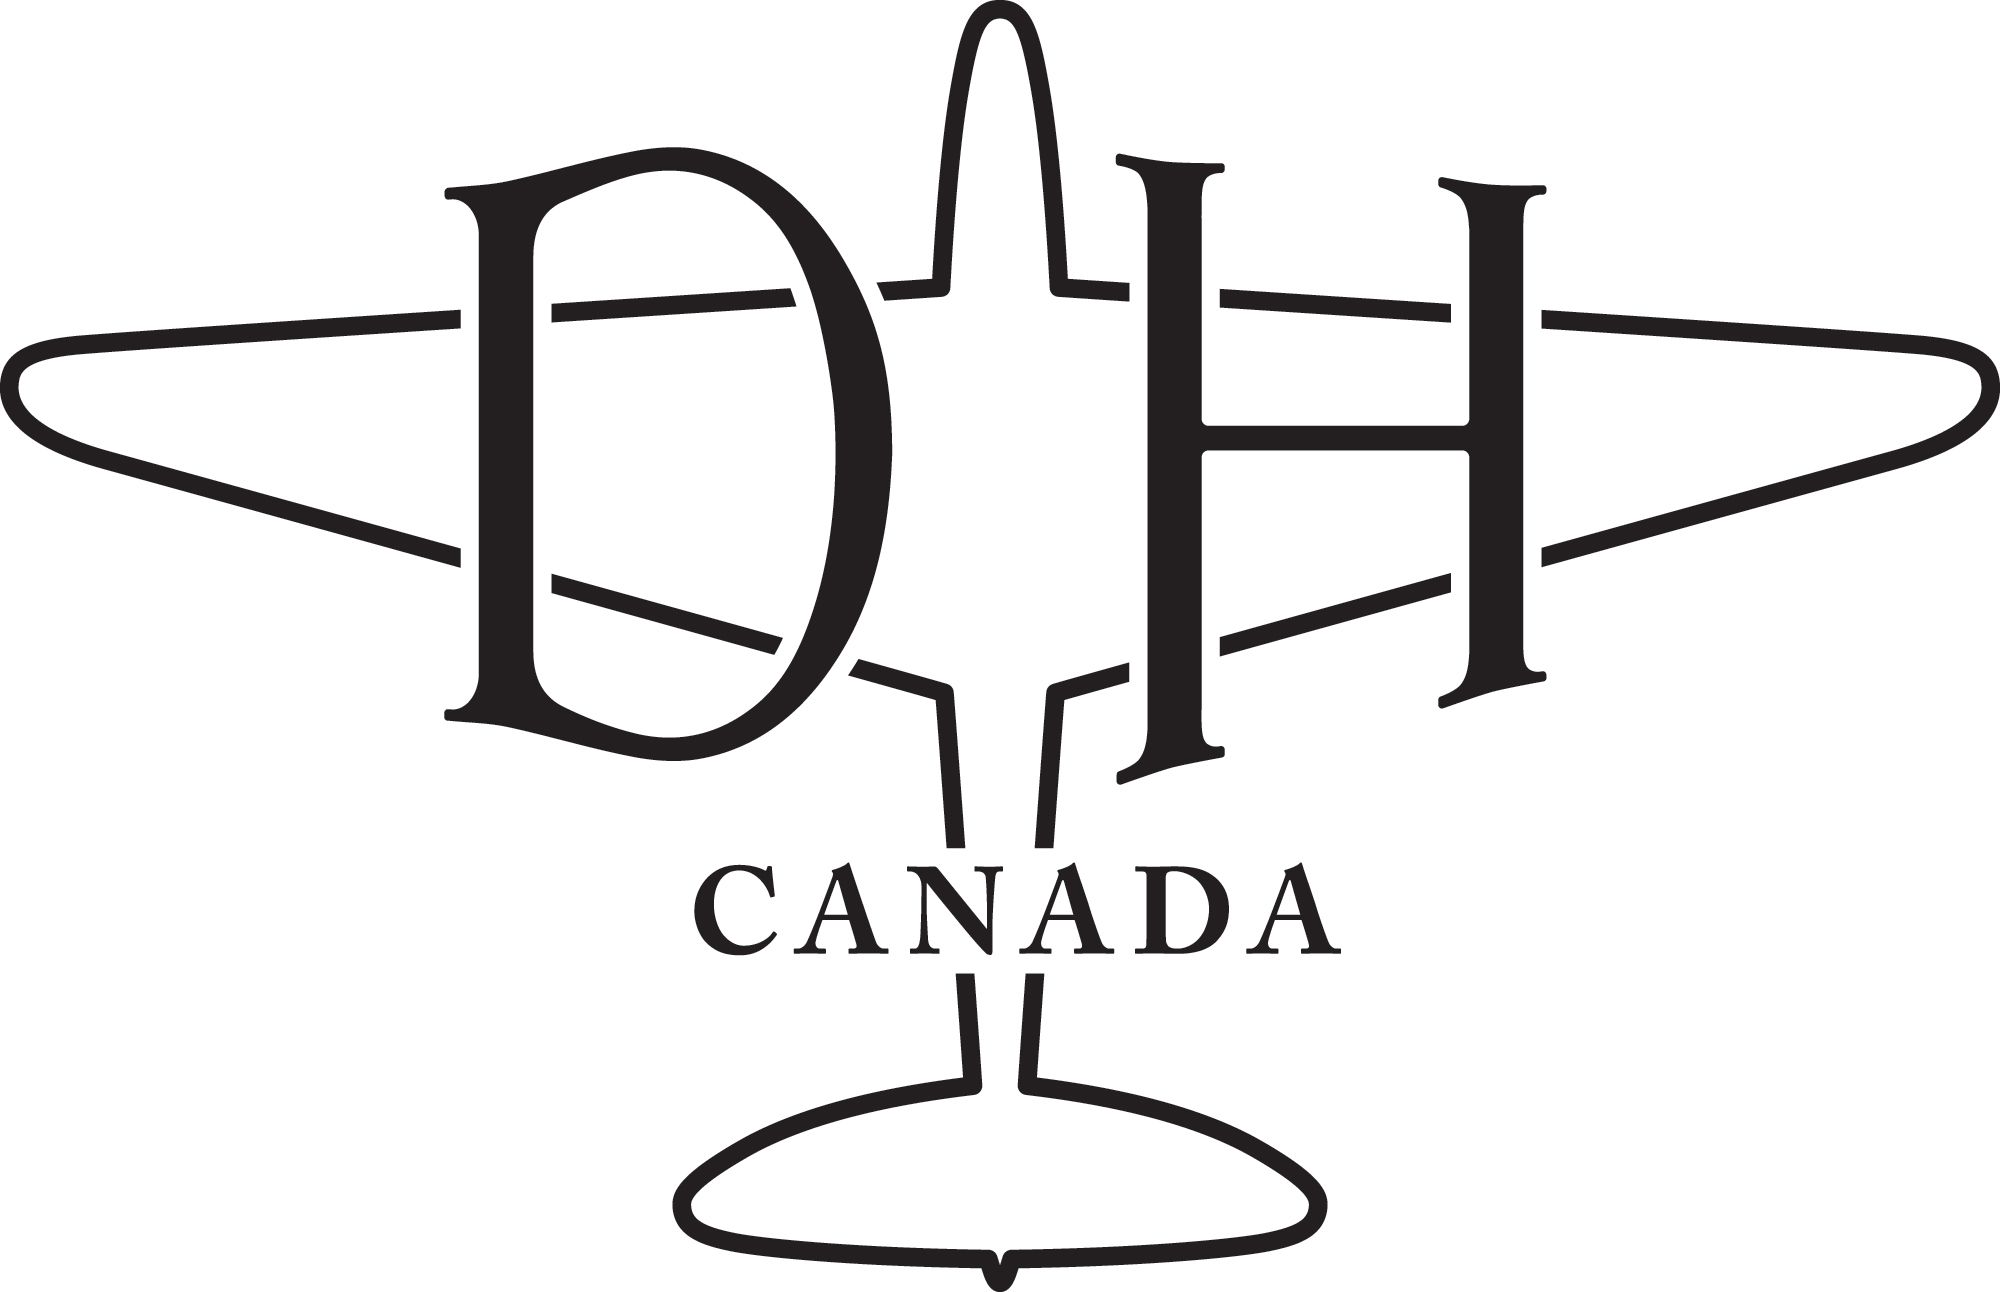 De Havilland Aircraft of Canada Limited